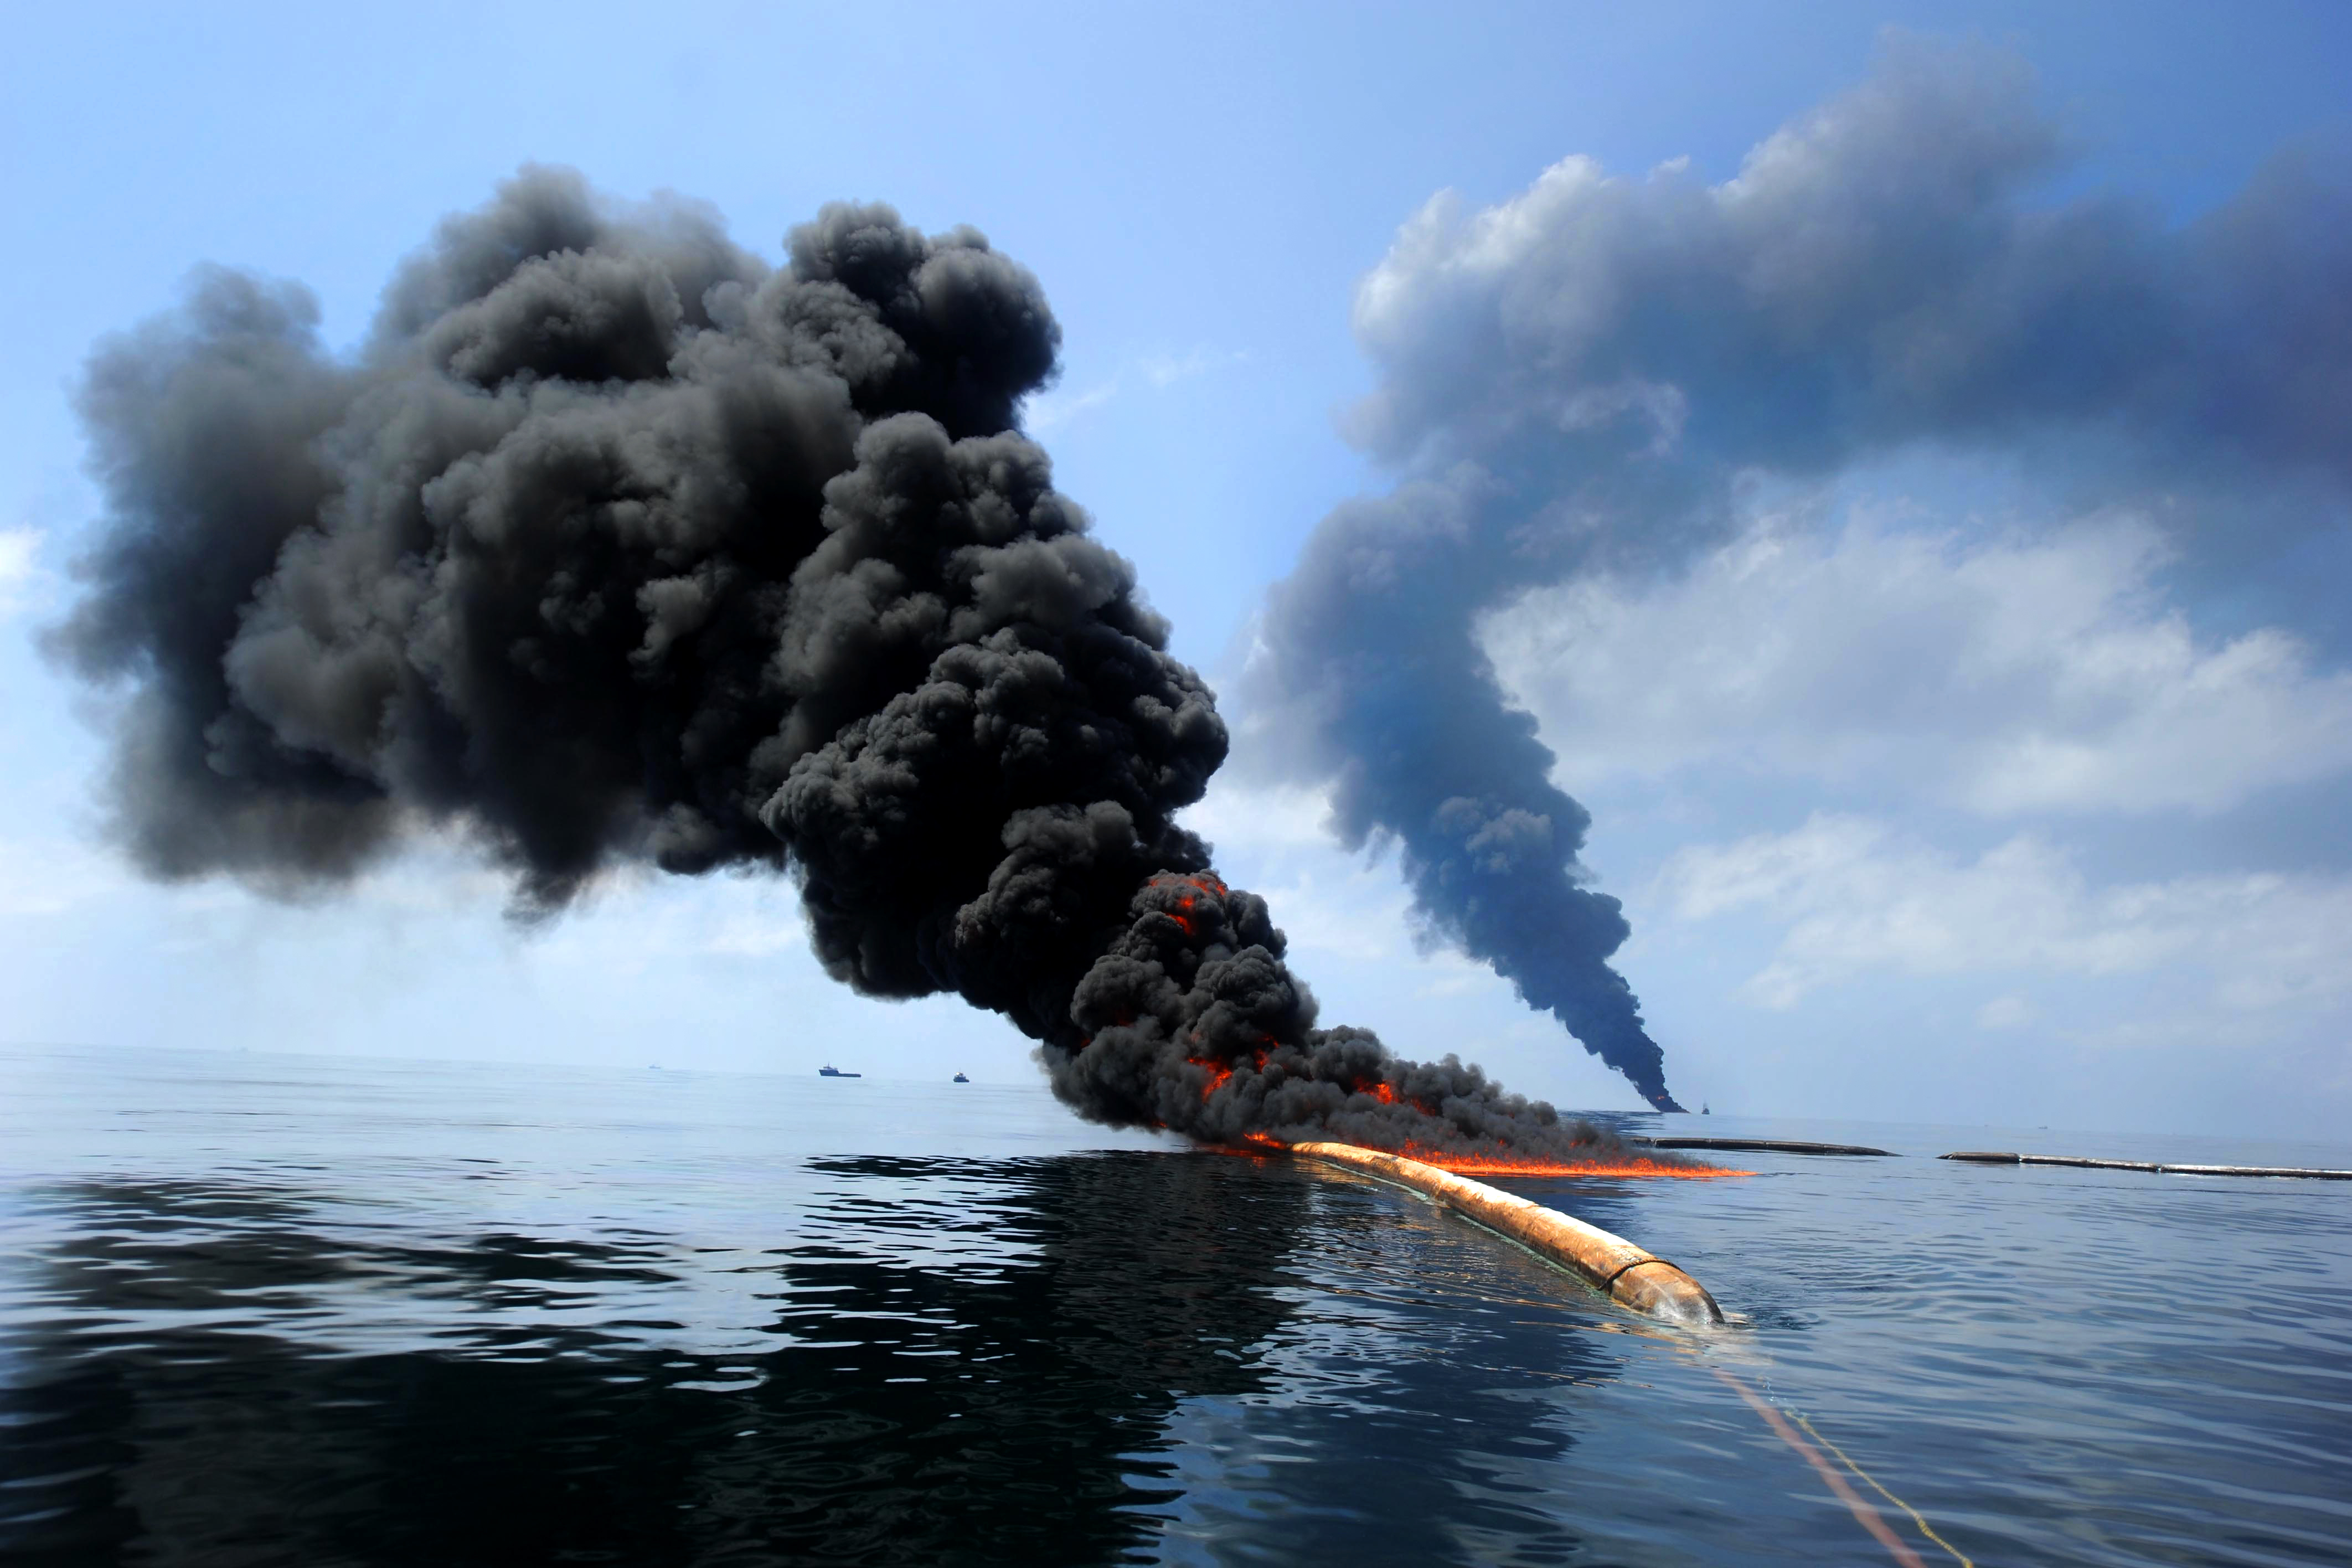 30 апреля 2010. Разлив нефти в мексиканском заливе. Разлив нефти в мексиканском заливе 2010. Deepwater Horizon разлив. Взрыв нефтяной платформы Deepwater Horizon.